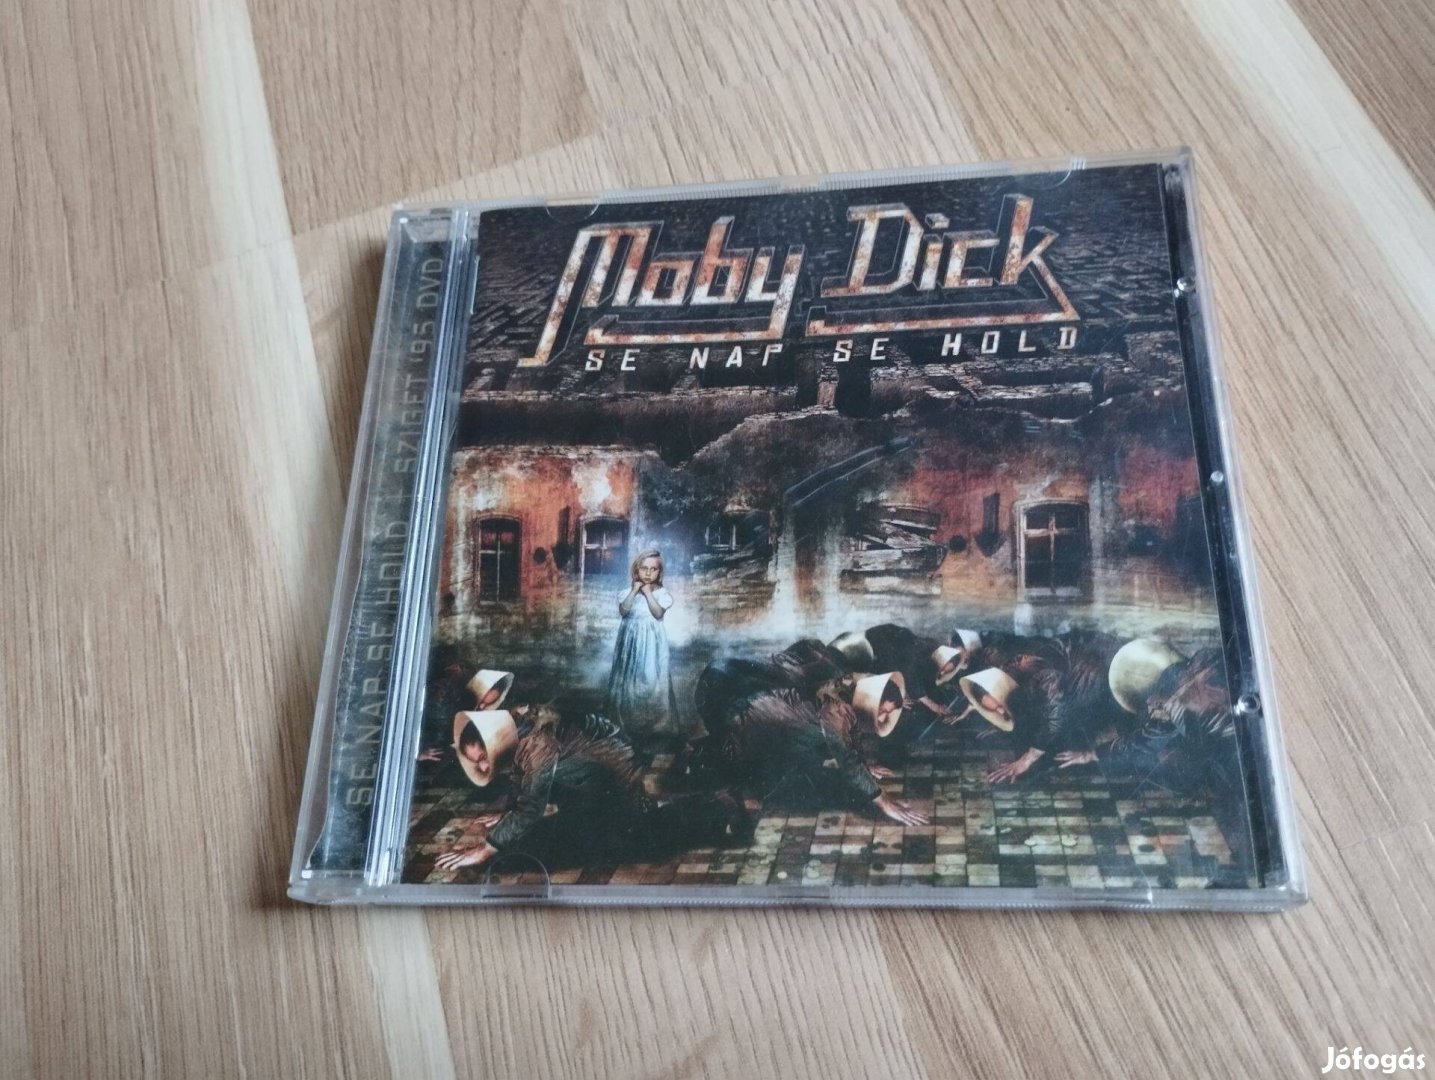 Moby Dick -Se nap,se Hold CD